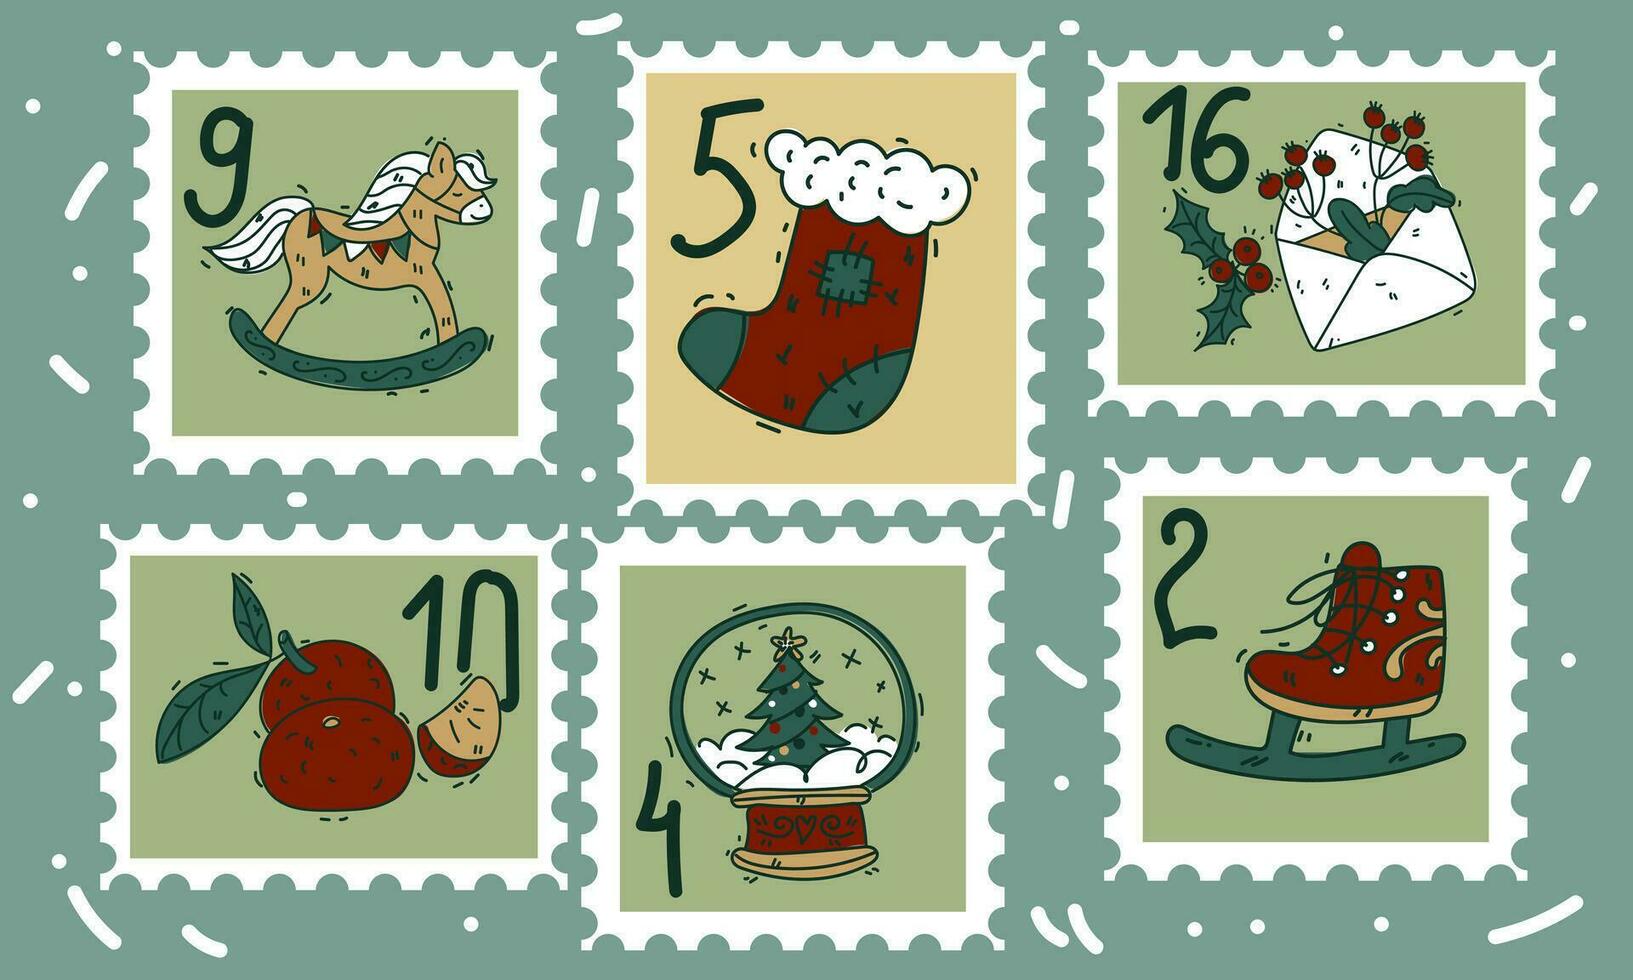 un conjunto de linda dibujado a mano gastos de envío sellos con Navidad y nuevo año atributos, un calcetín, un carta, mandarinas, un nieve globo, patines y números. de moda vector ilustraciones en dibujos animados estilo